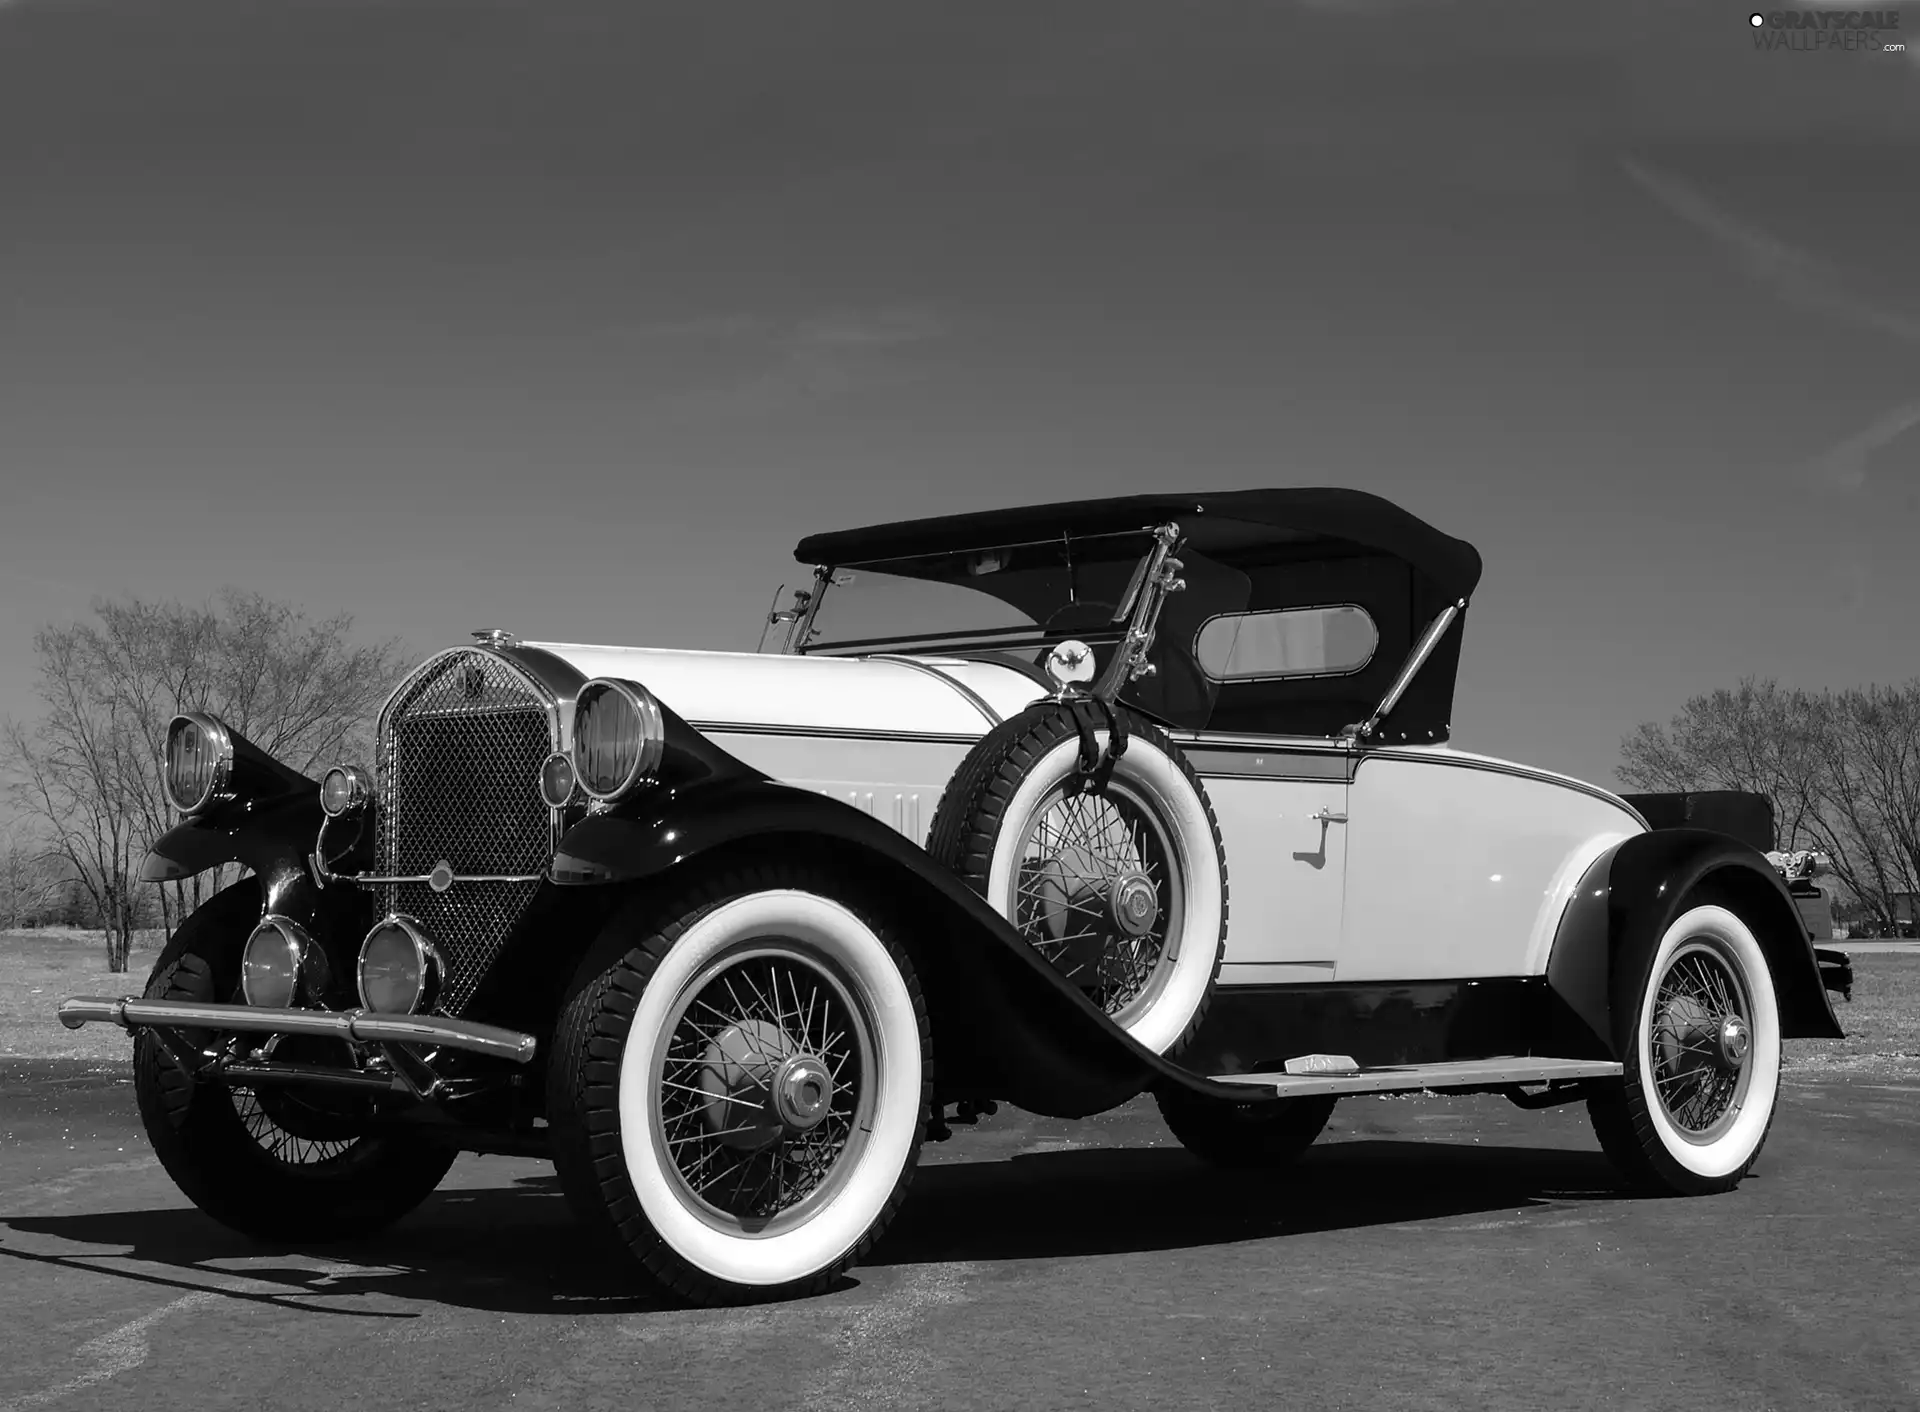 1928 Year, Pierce Arrow, The historic car